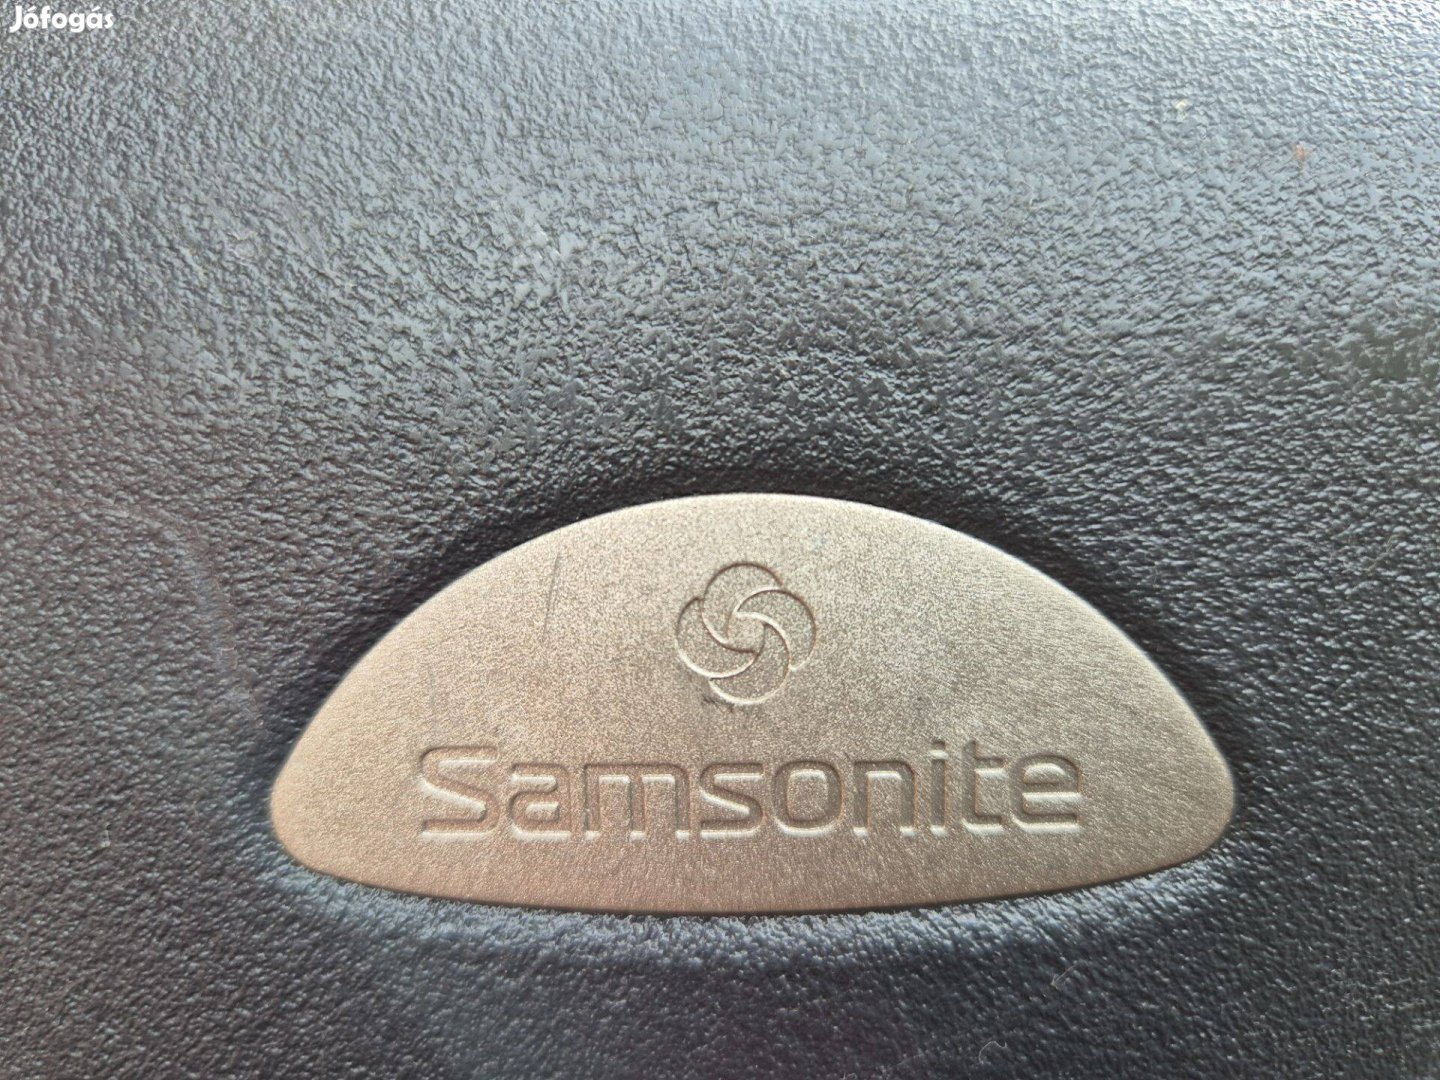 Samsonite minőségi nagy bőrönd eladó dióhéj kenénységű mindent kibír